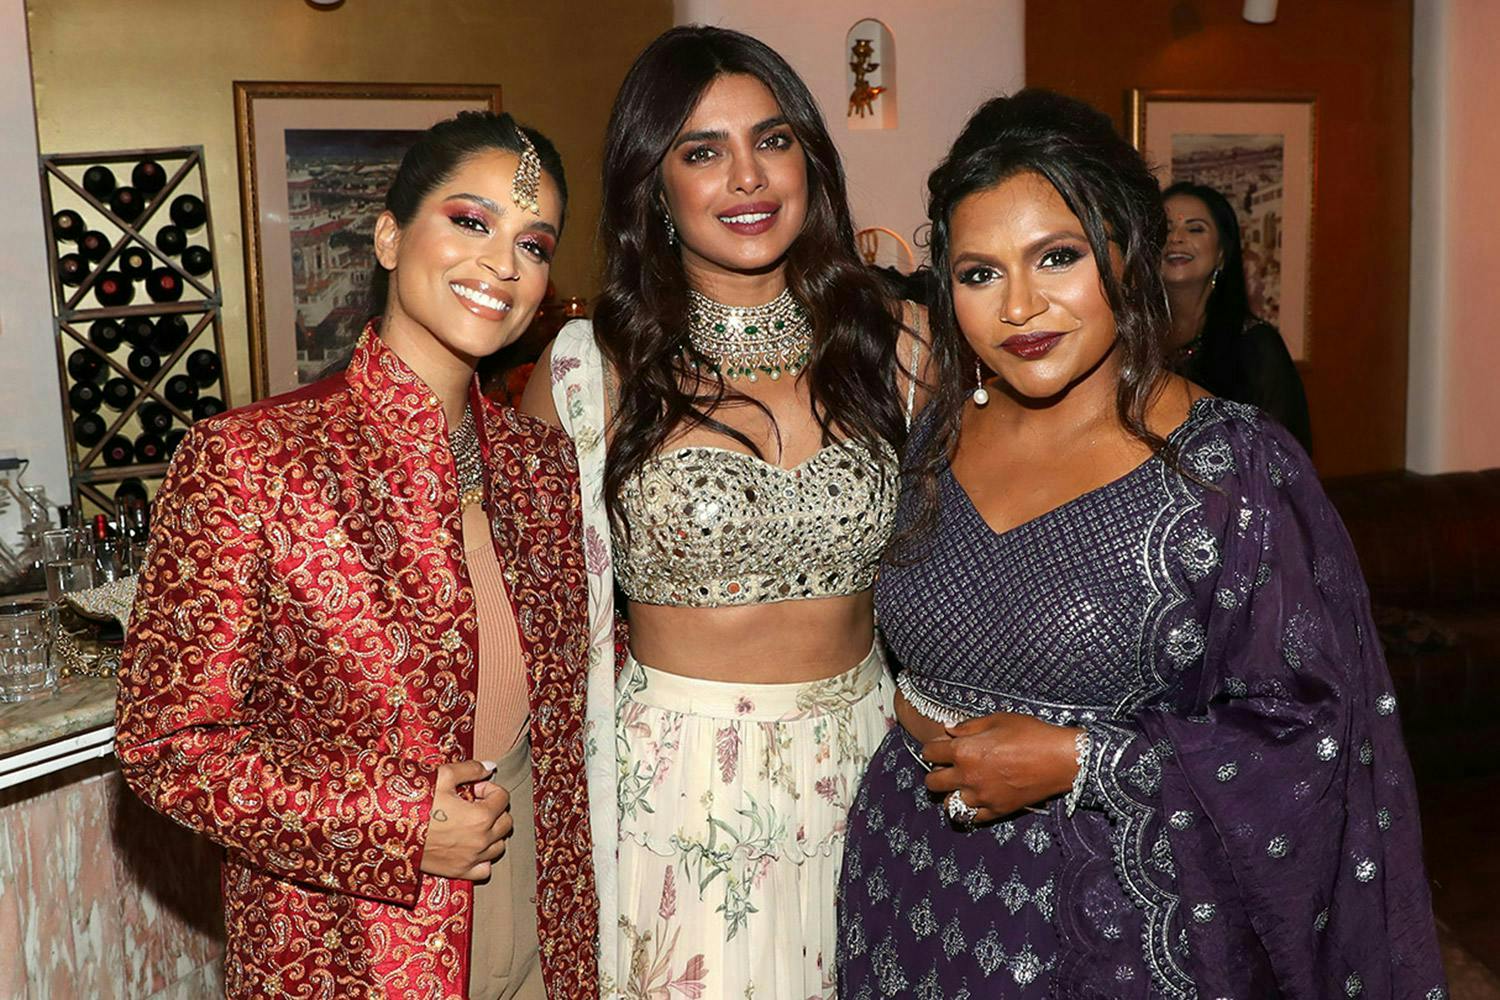  Lilly Singh, Priyanka Chopra, and Mindy Kaling